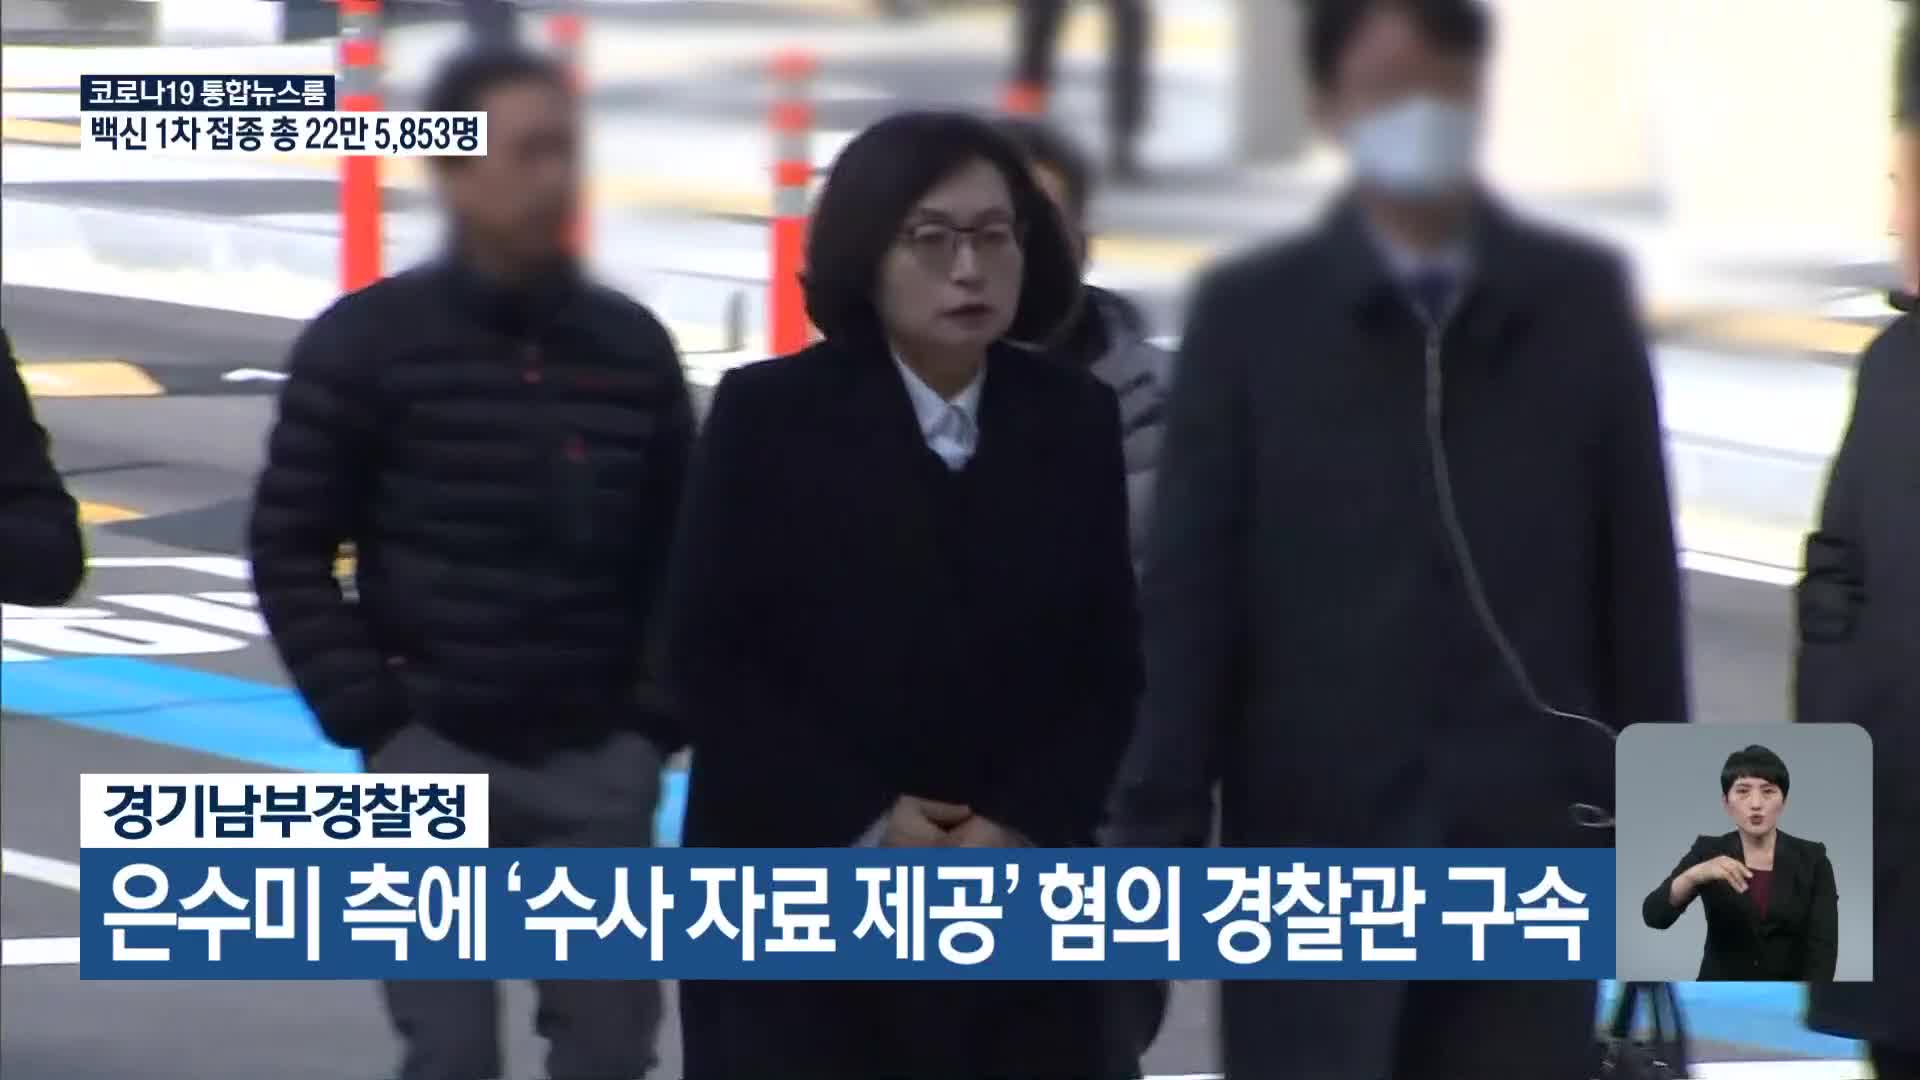 경기남부경찰청, 은수미 측에 ‘수사 자료 제공’ 혐의 경찰관 구속